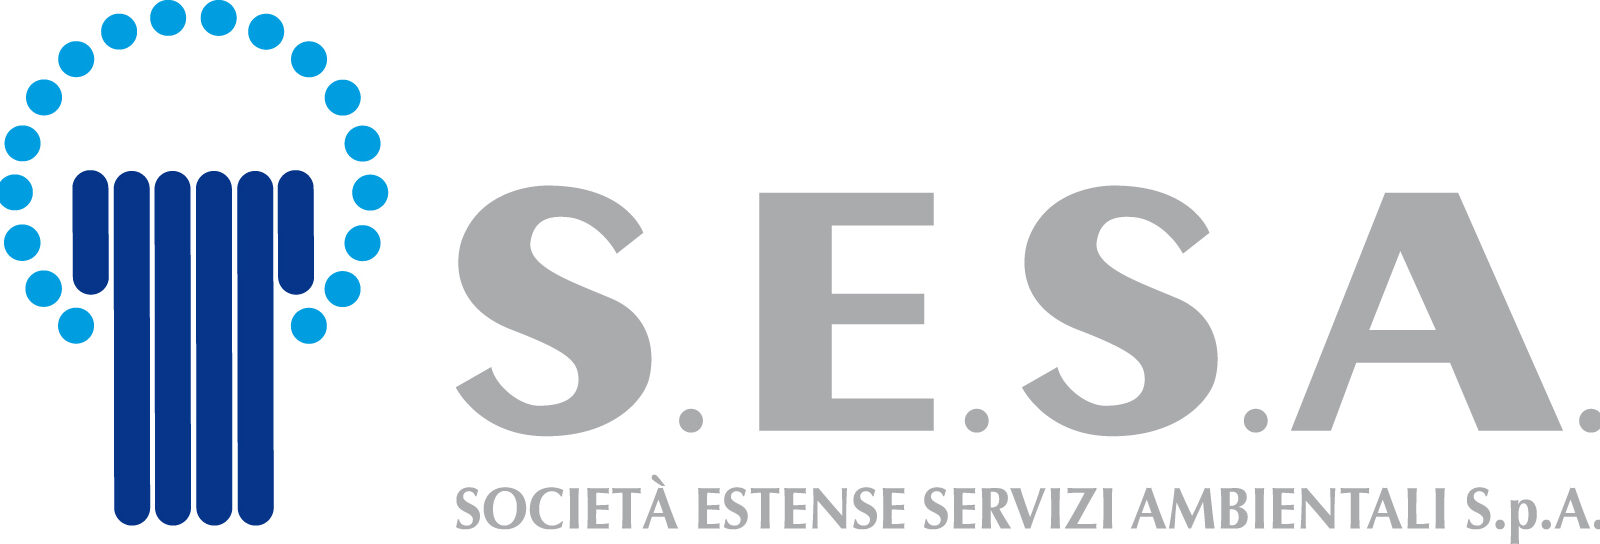 Logo Sesa